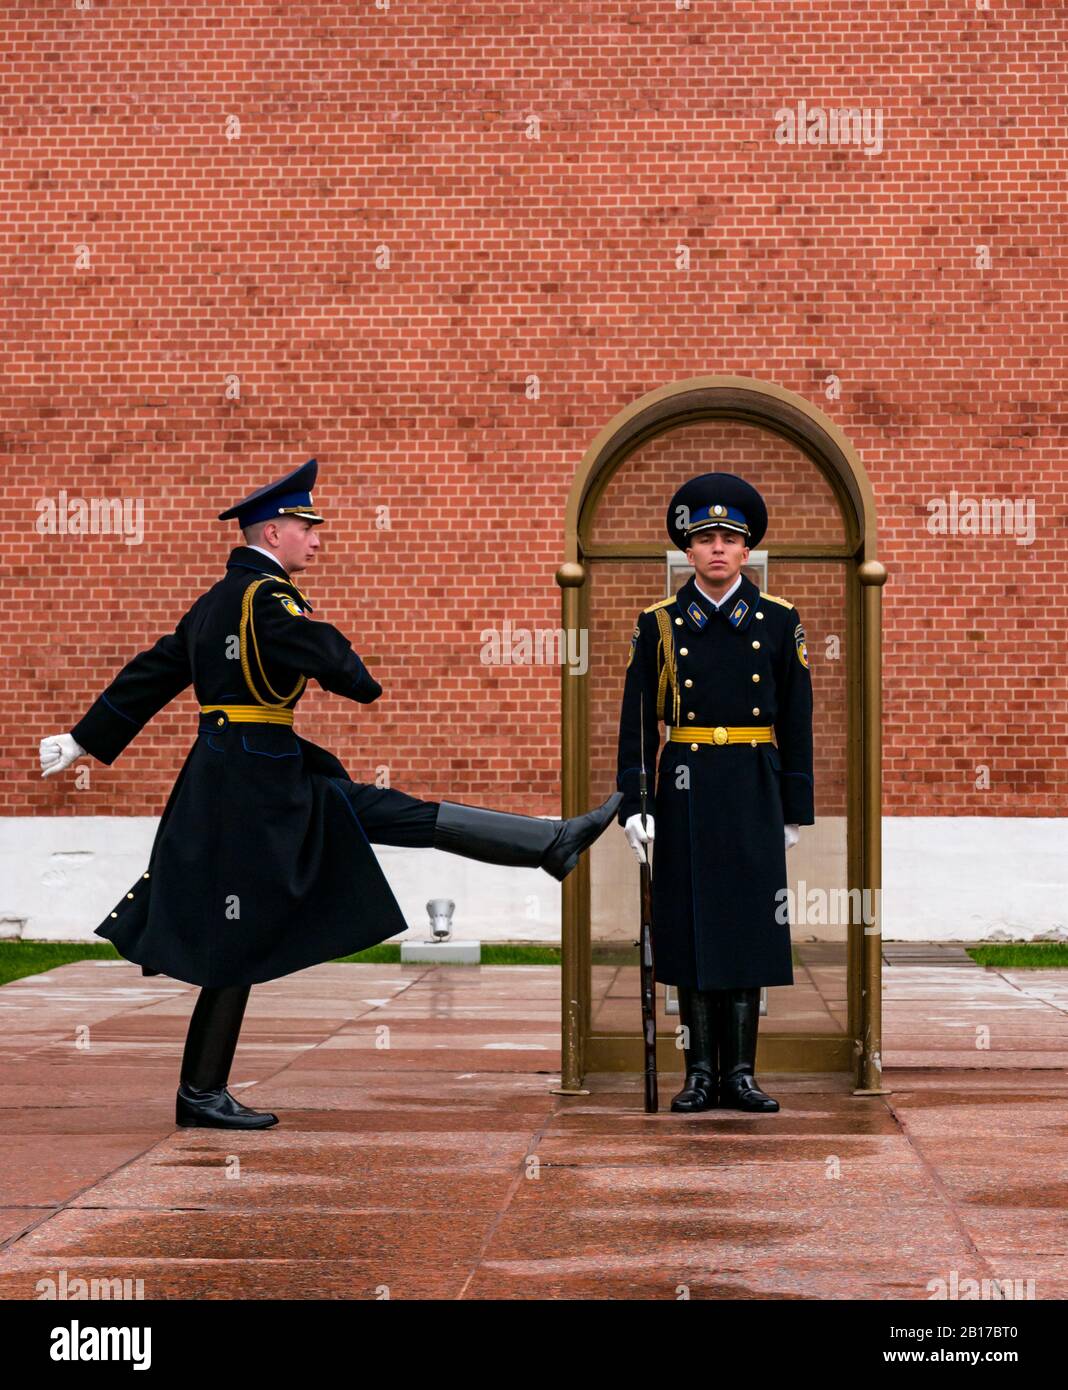 Ispezione della guardia del reggimento del Cremlino con passo d'oca del soldato marching, tomba del memoriale di guerra del soldato sconosciuto, Giardini Alexander, Mosca, Russia Foto Stock